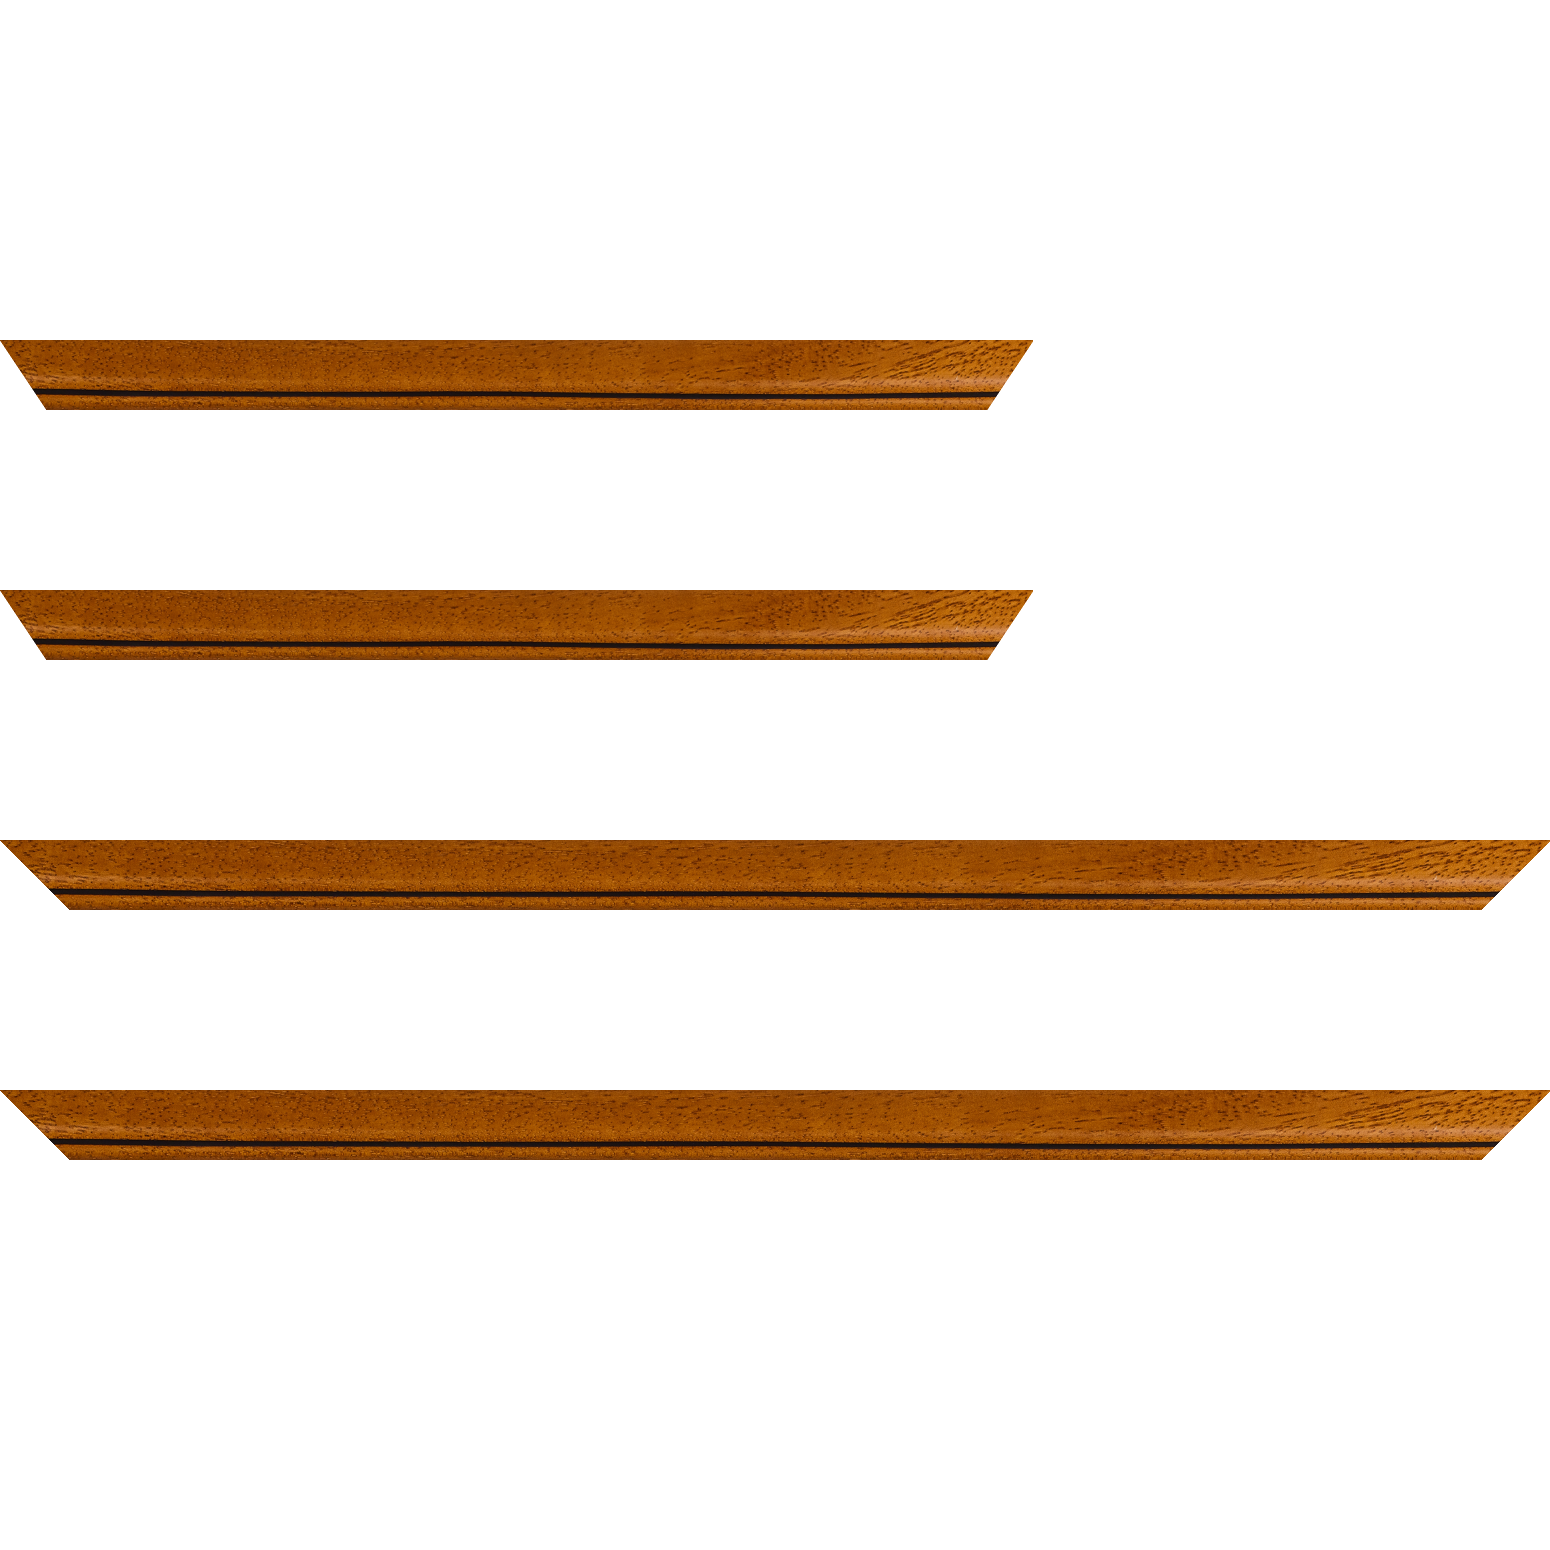 Baguette bois profil bombé largeur 2.4cm couleur marron ton bois satiné filet noir - 40x60